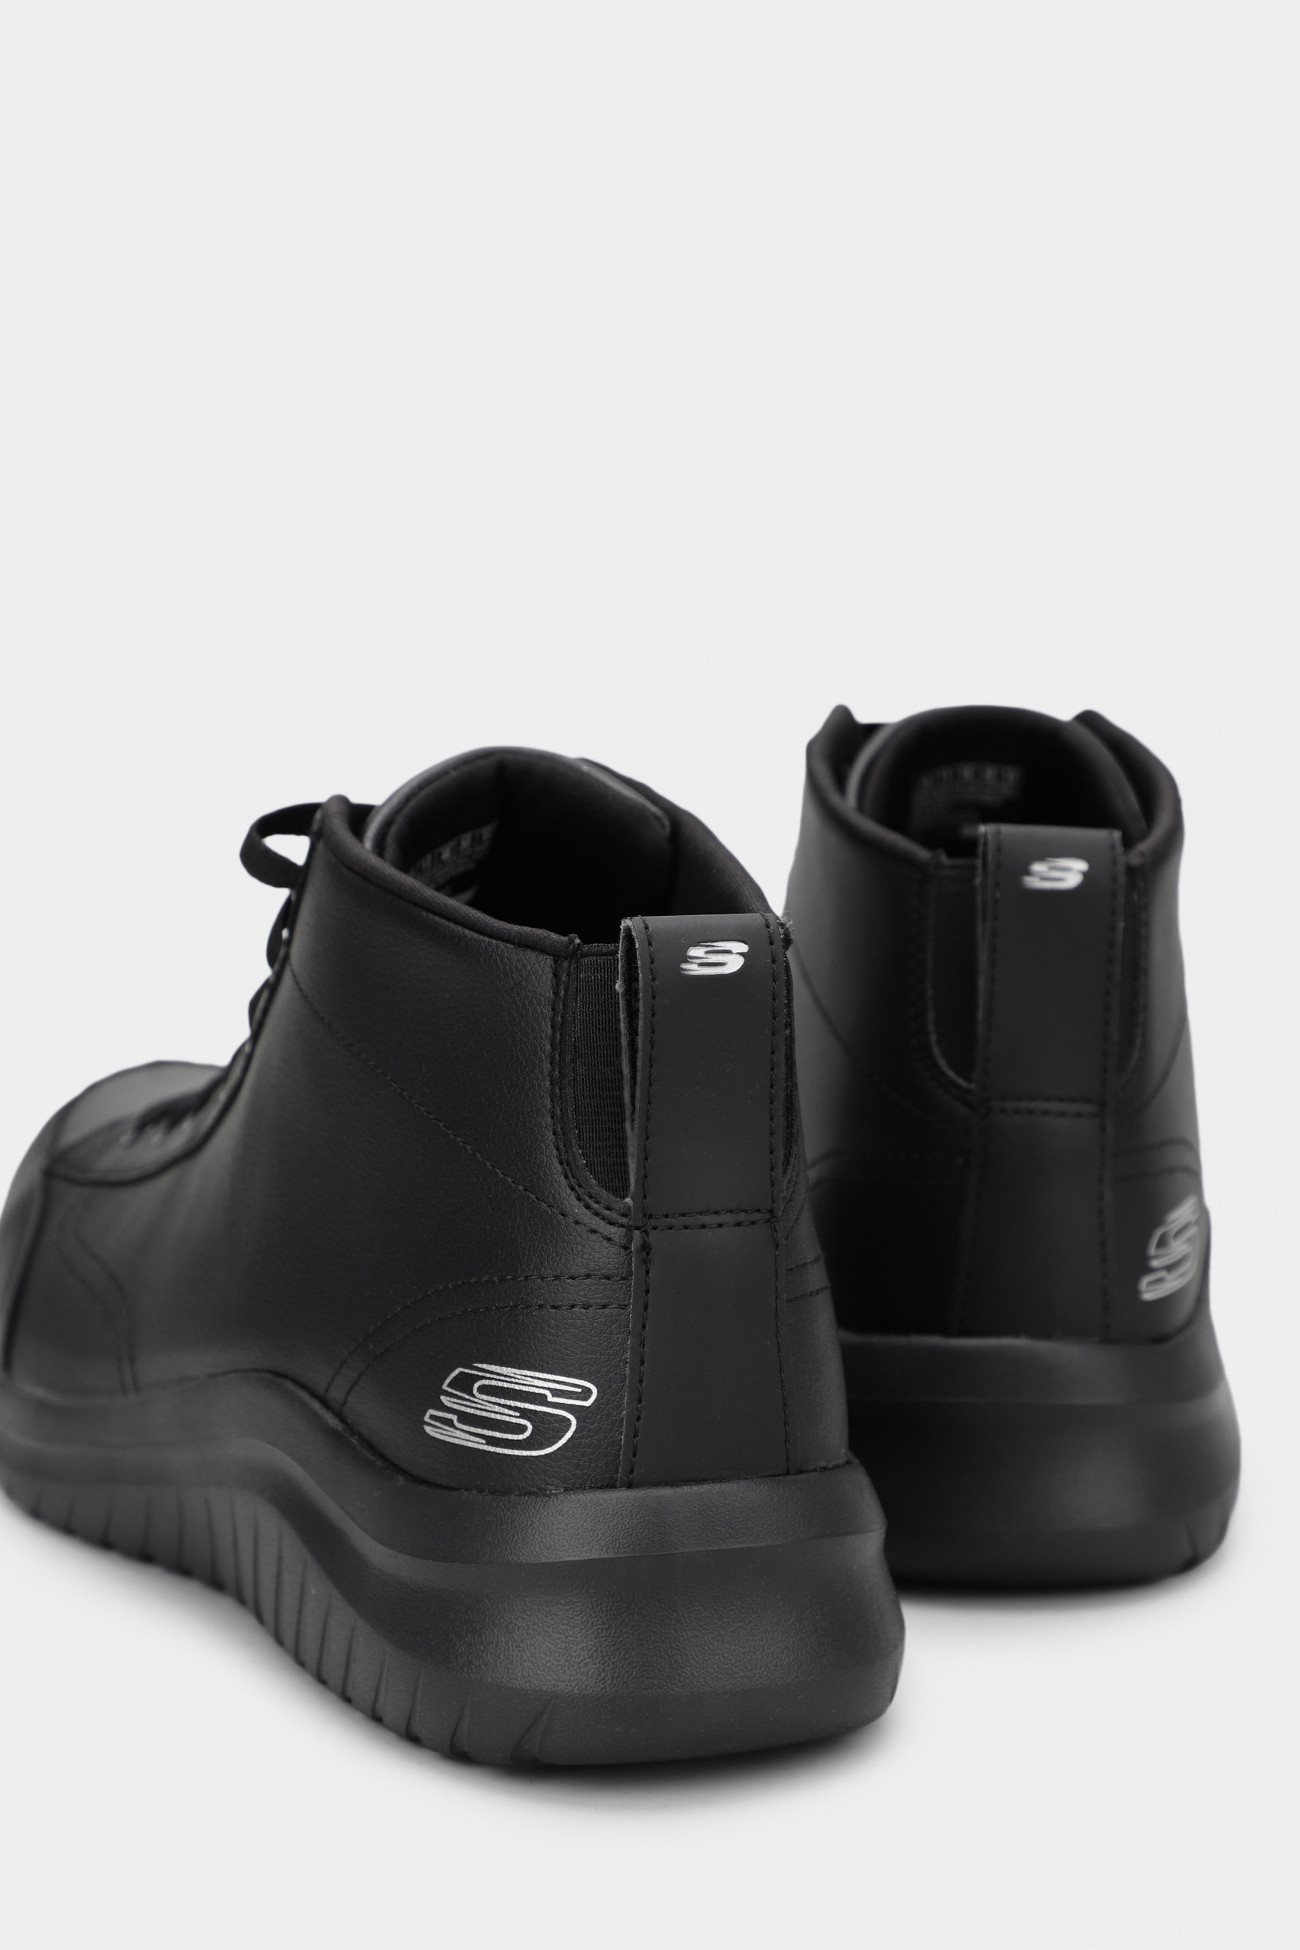 Ботинки мужские Skechers Ultra Flex 2.0 черные 232110 BBK изображение 4